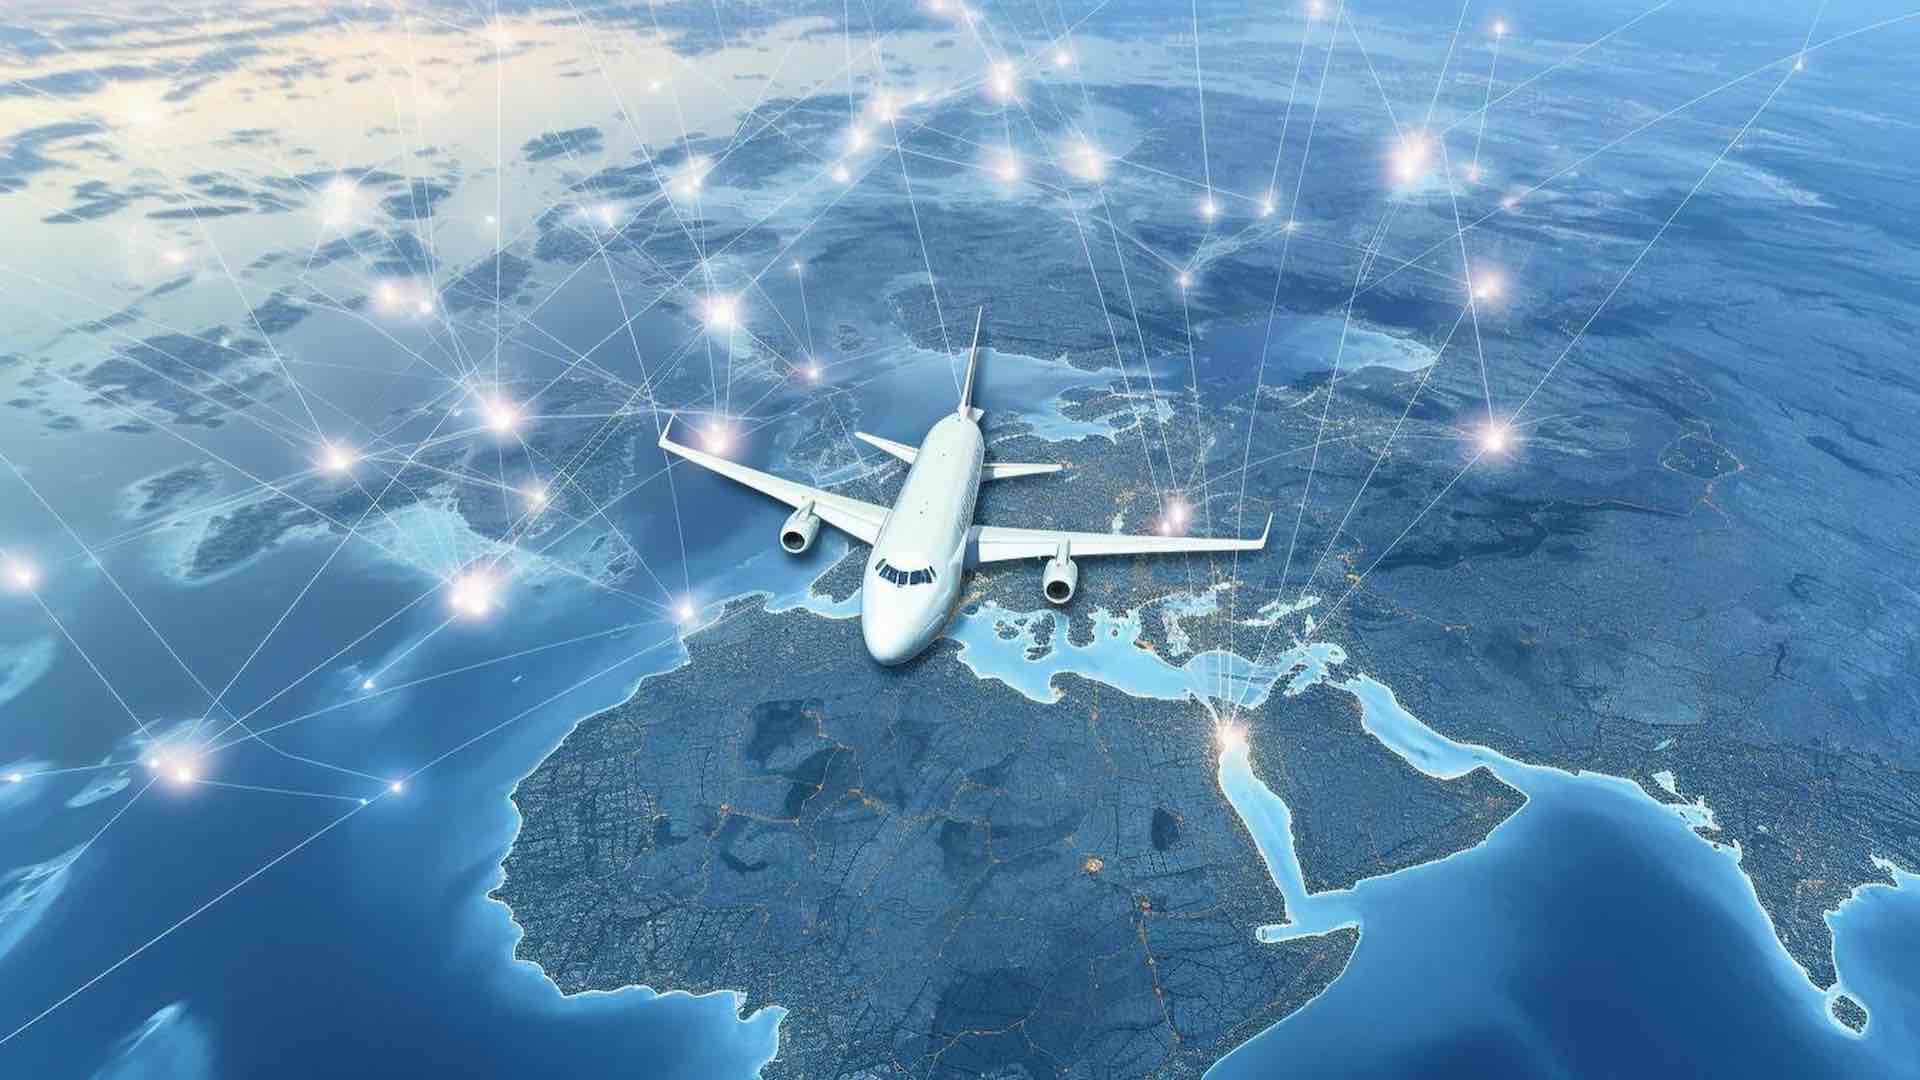 ایکائو رشد 2 درصدی در سفرهای هوایی را پیش بینی می کند و سود آن 39 میلیارد دلار است